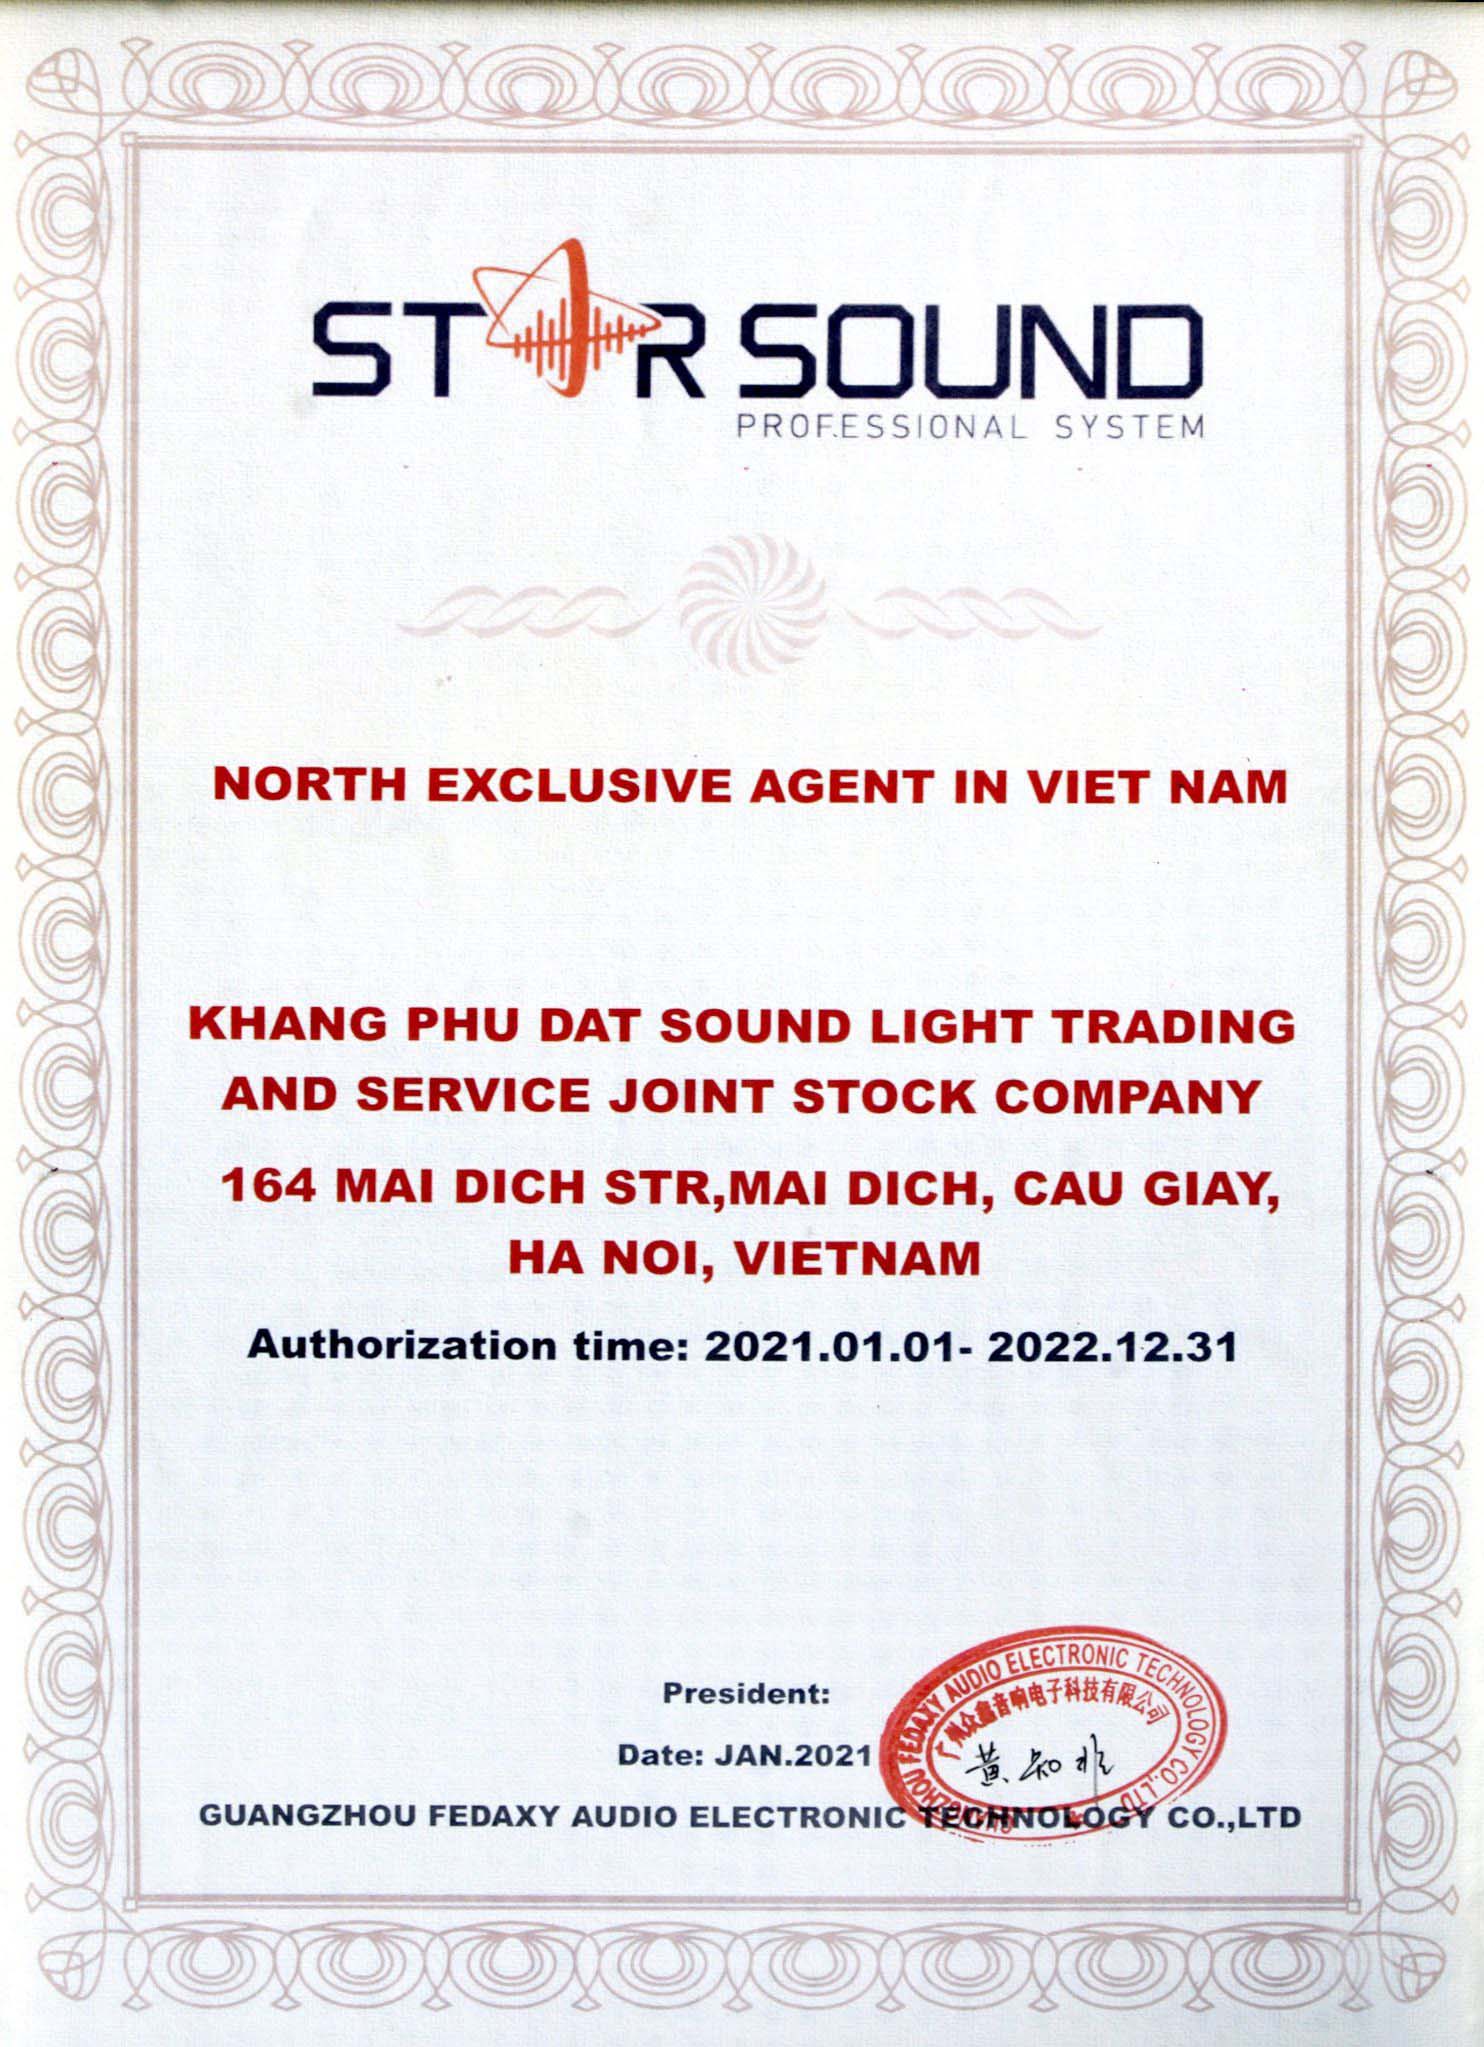 Phân phối sản phẩm độc quyền Star Sound tại Việt Nam